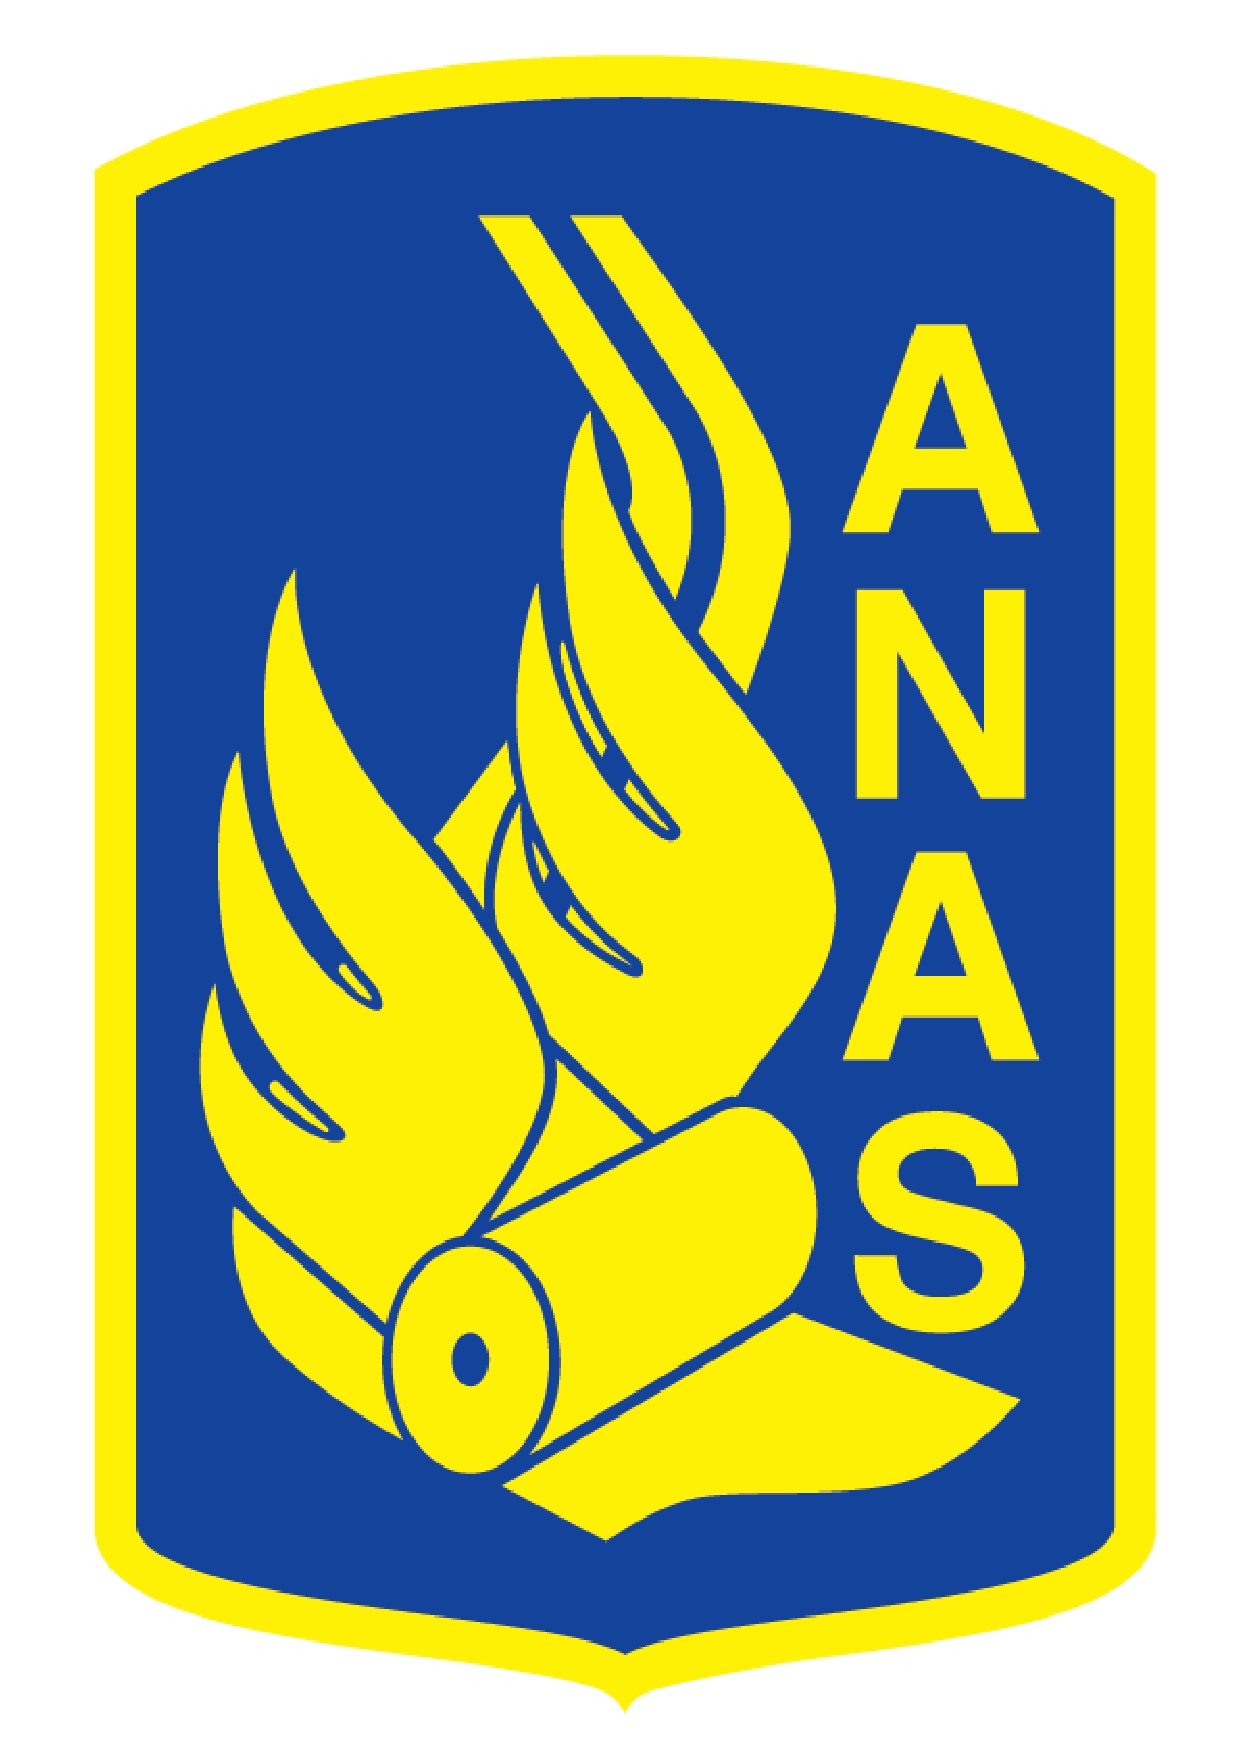 Anas mette a bando 900 mila euro per interventi sulle rete ordinaria nella provincia di Agrigento